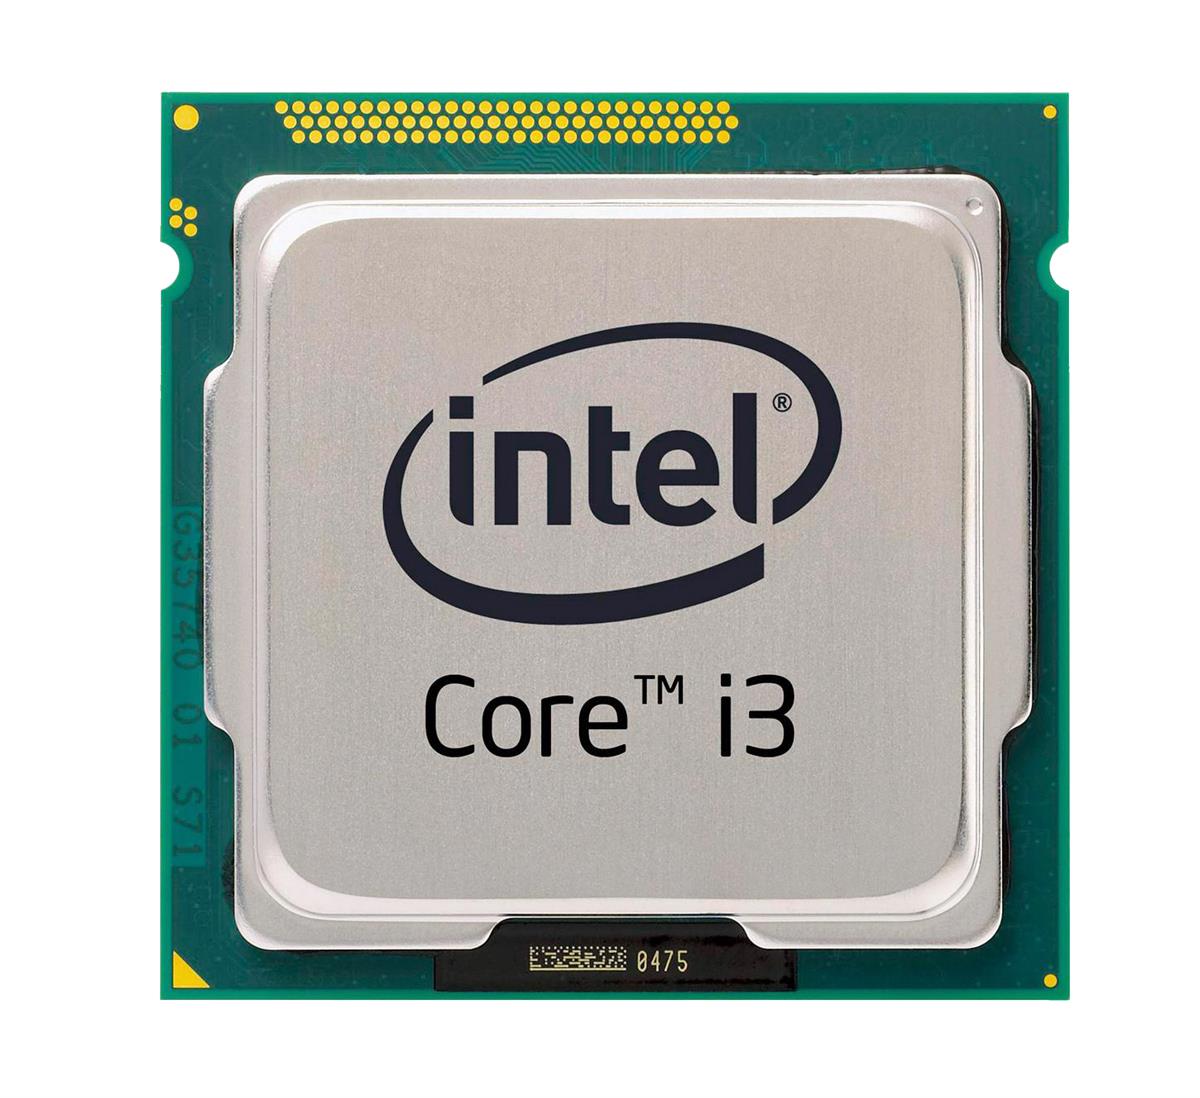 SR1TB Intel Core i3-4370T Dual Core 3.30GHz 5.00GT/s DMI2 4MB L3 Cache Socket LGA1150 Desktop Processor